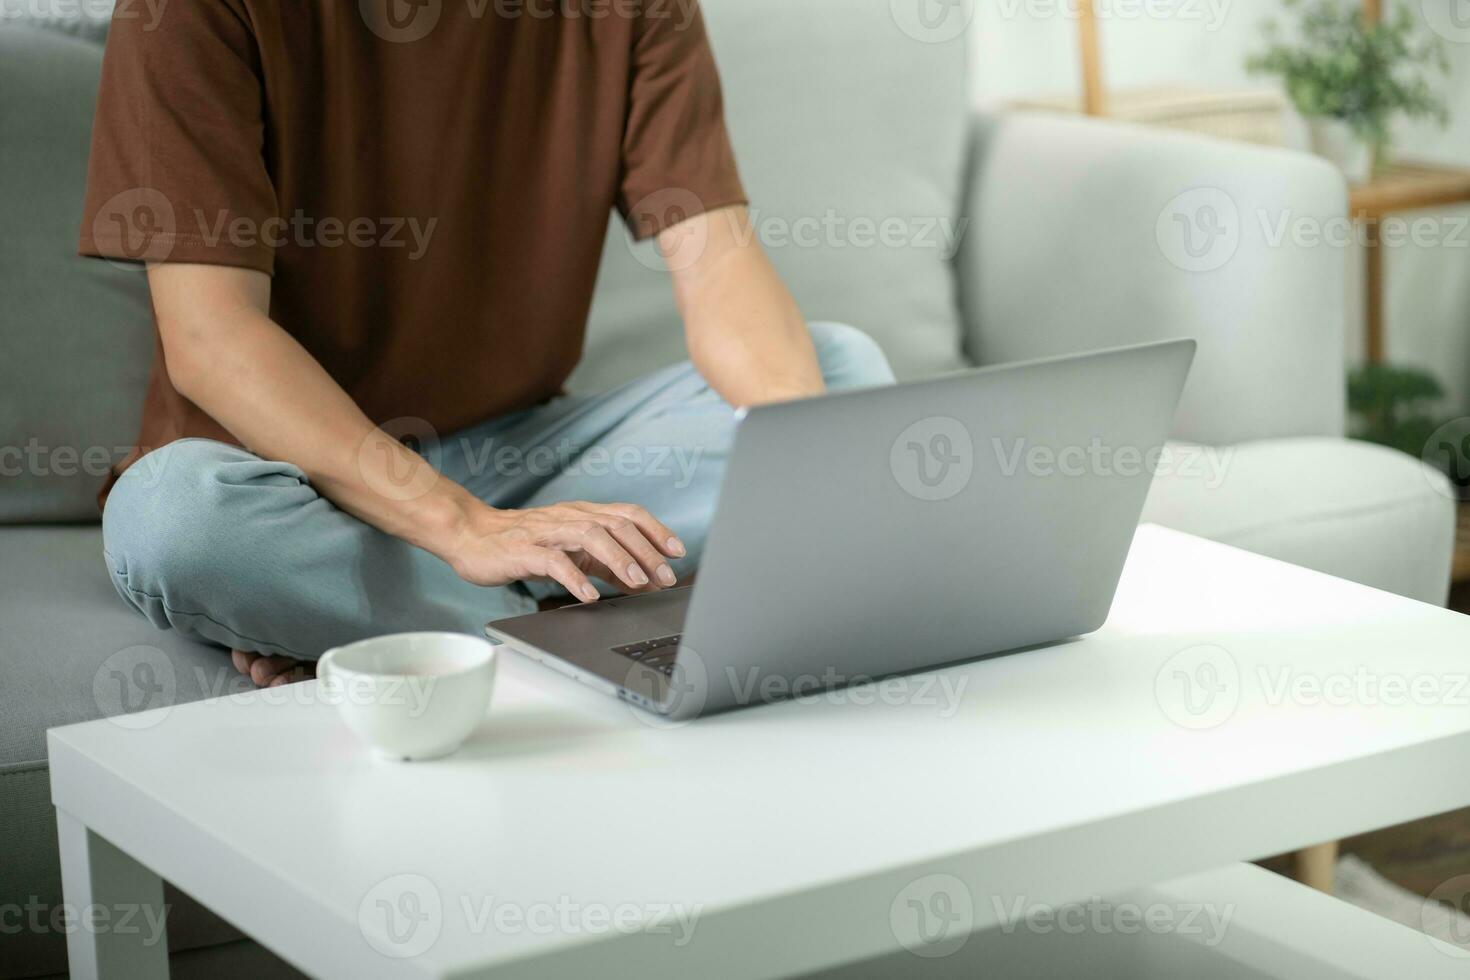 Mens werk van huis. werk online Aan laptop. Aziatisch zakenman werken online bedrijf concept met sociaal afstand nemen laptop online ontmoeting. foto